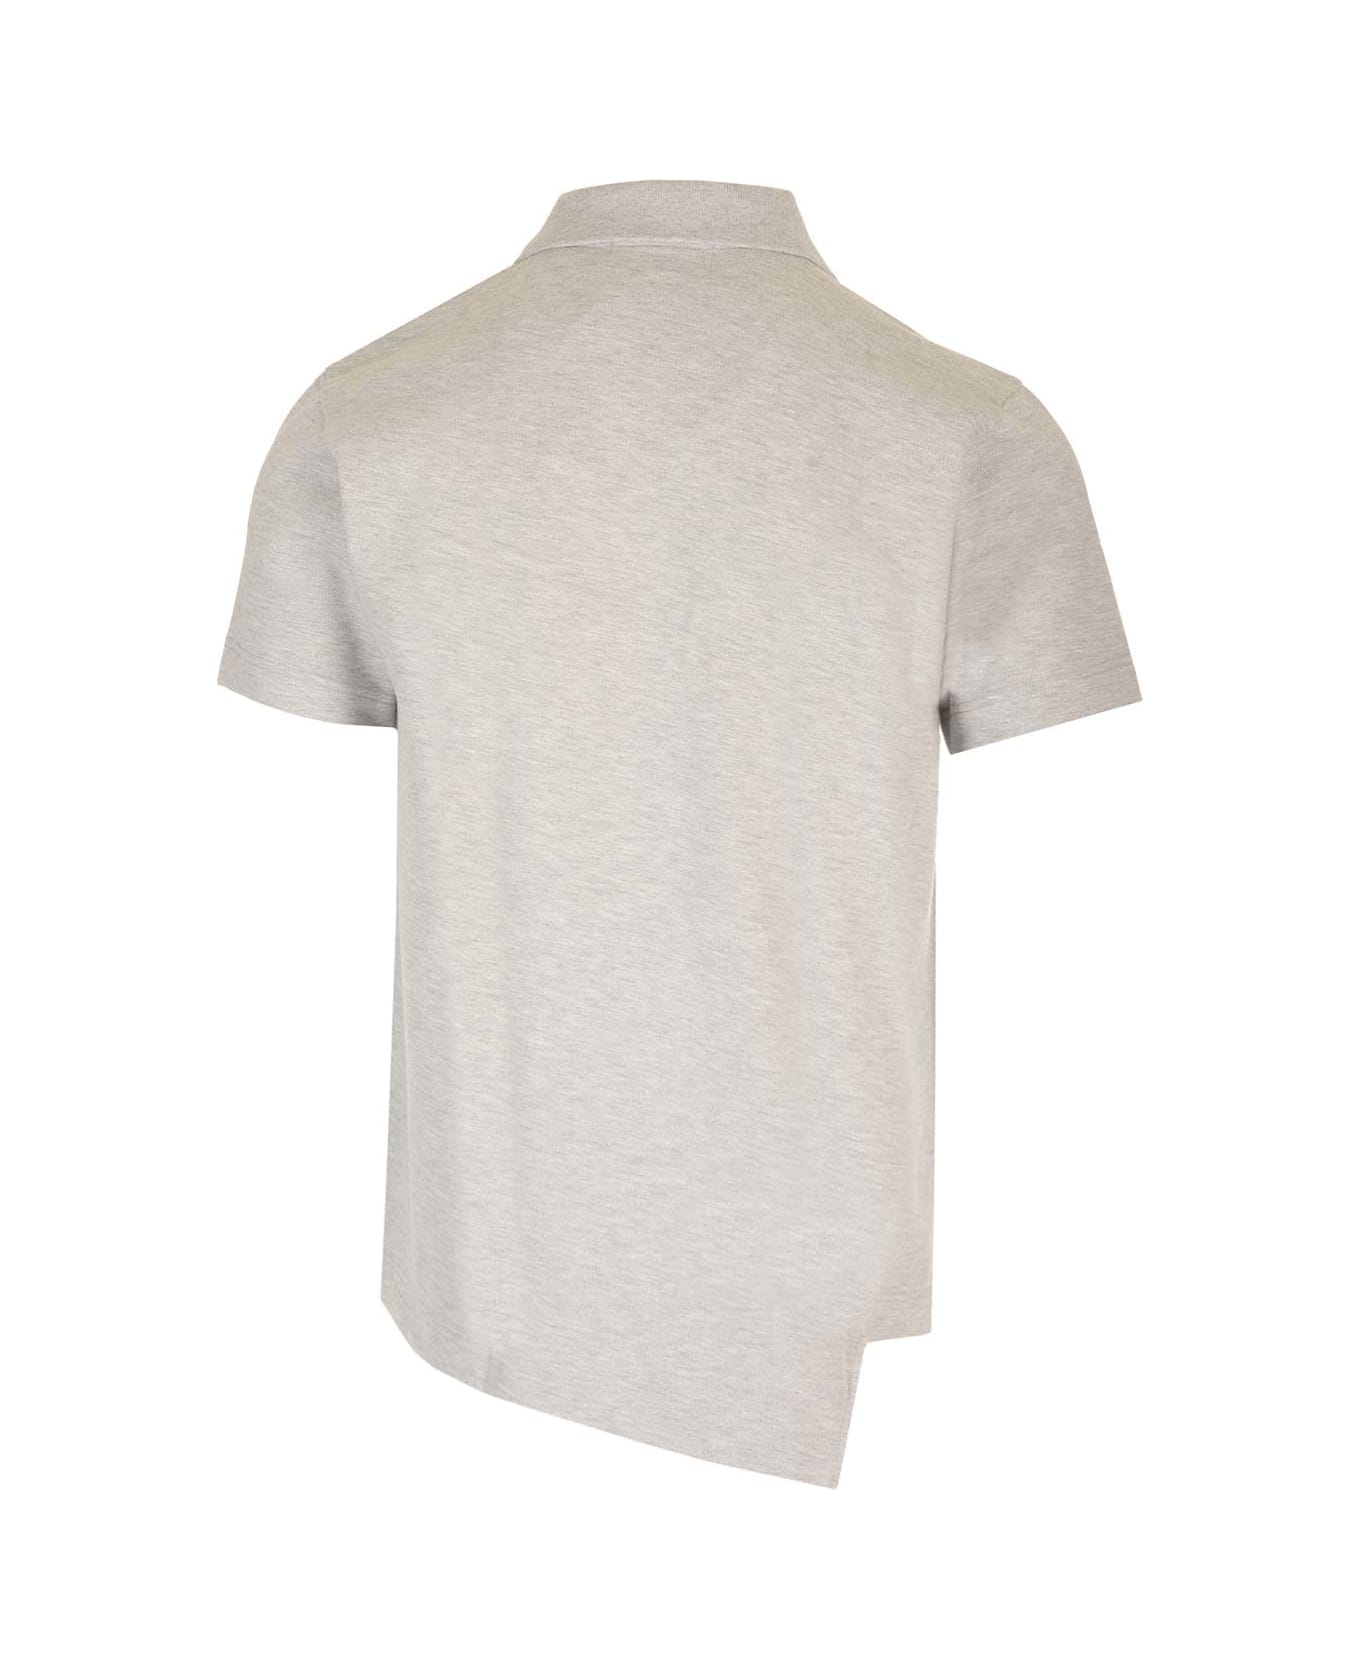 Comme des Garçons Shirt Asymmetric Lacoste Polo Shirt - Top Grey